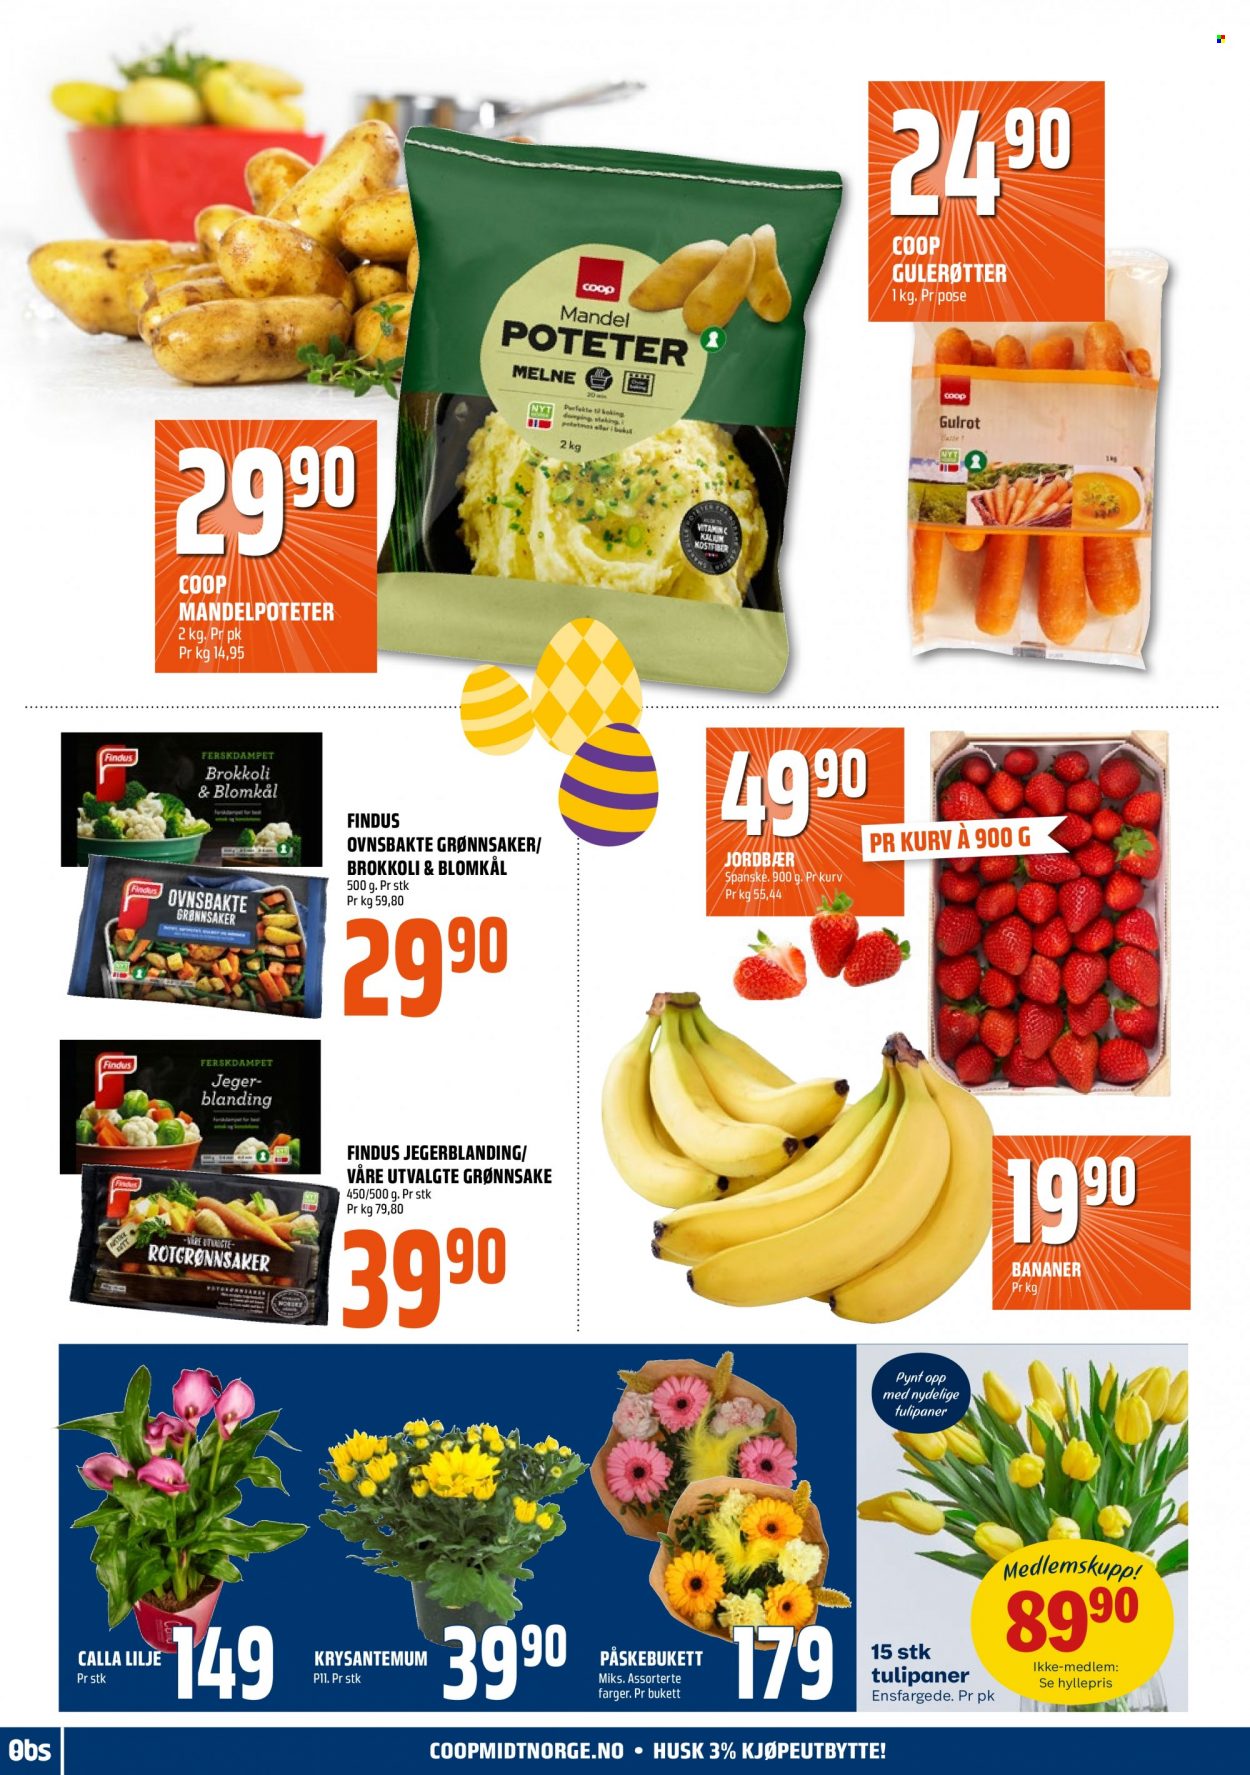 thumbnail - Kundeavis Coop Obs - 26.3.2023 - 1.4.2023 - Produkter fra tilbudsaviser - bananer, jordbær, blomkål, brokkoli, gulrot, Findus, mandel, kurv. Side 16.